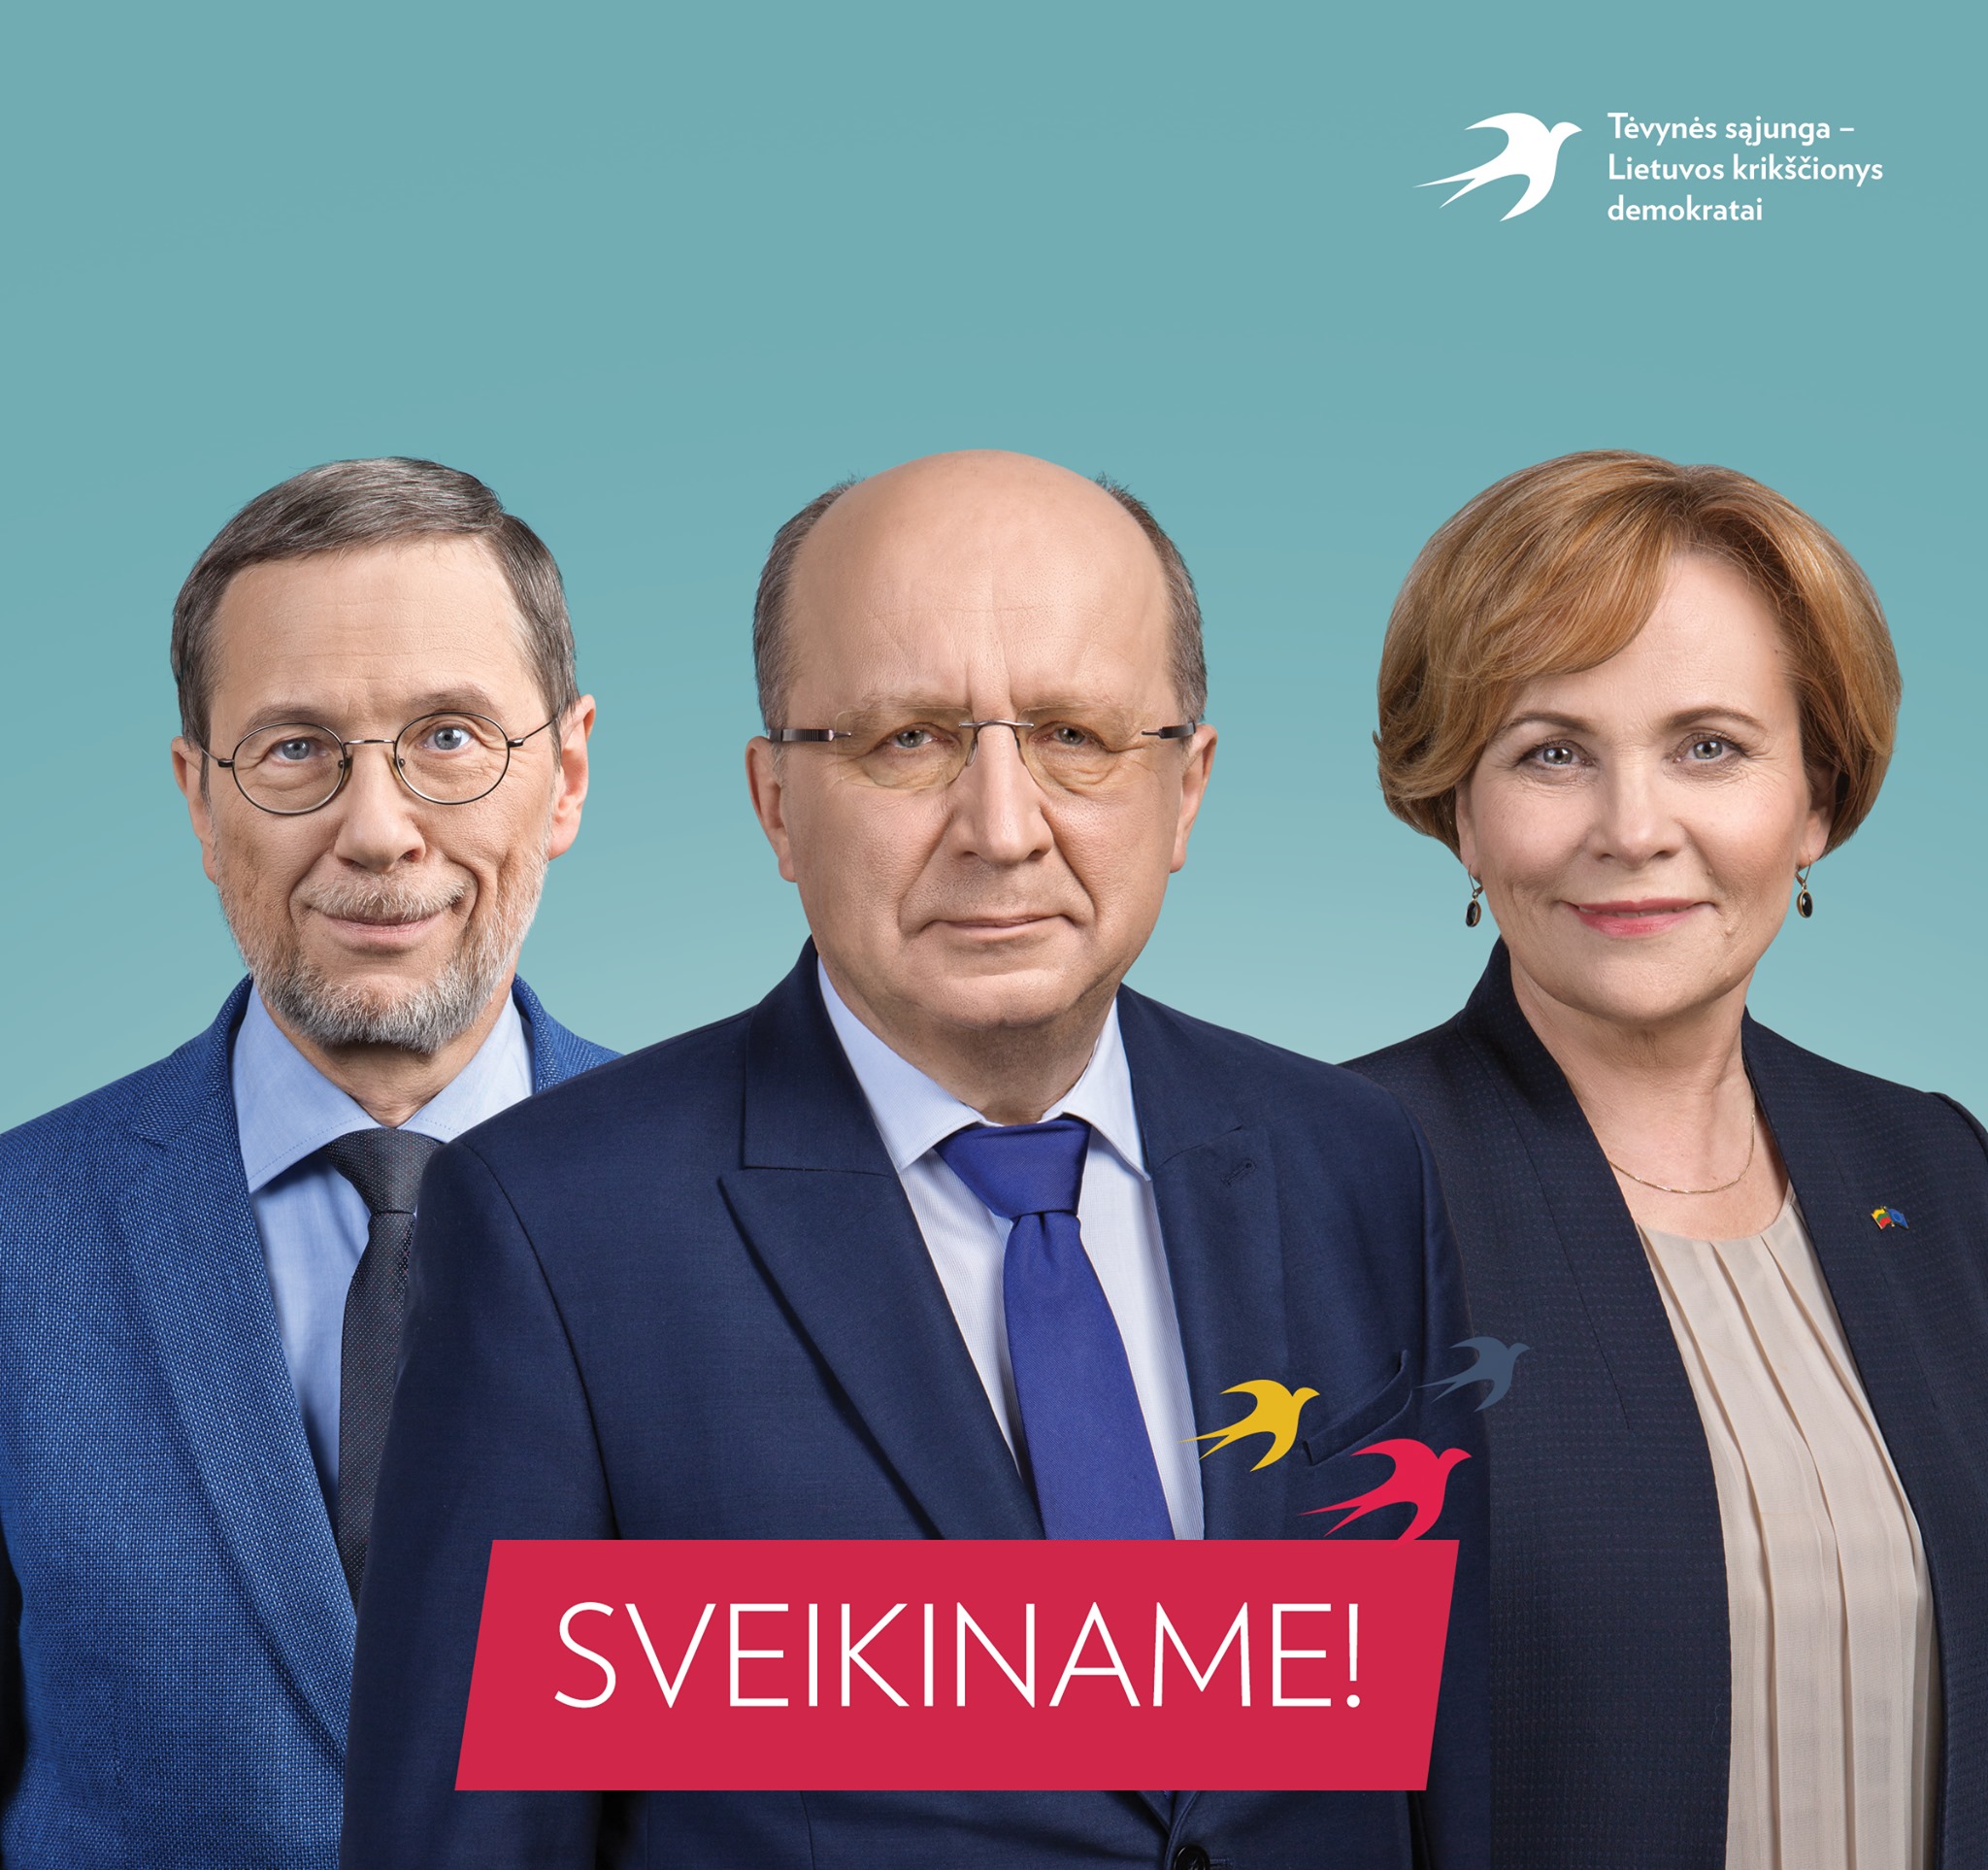 Naujieji TS-LKD nariai Europos parlamente: A. Kubilius, L. Mažylis ir R. Juknevičienė